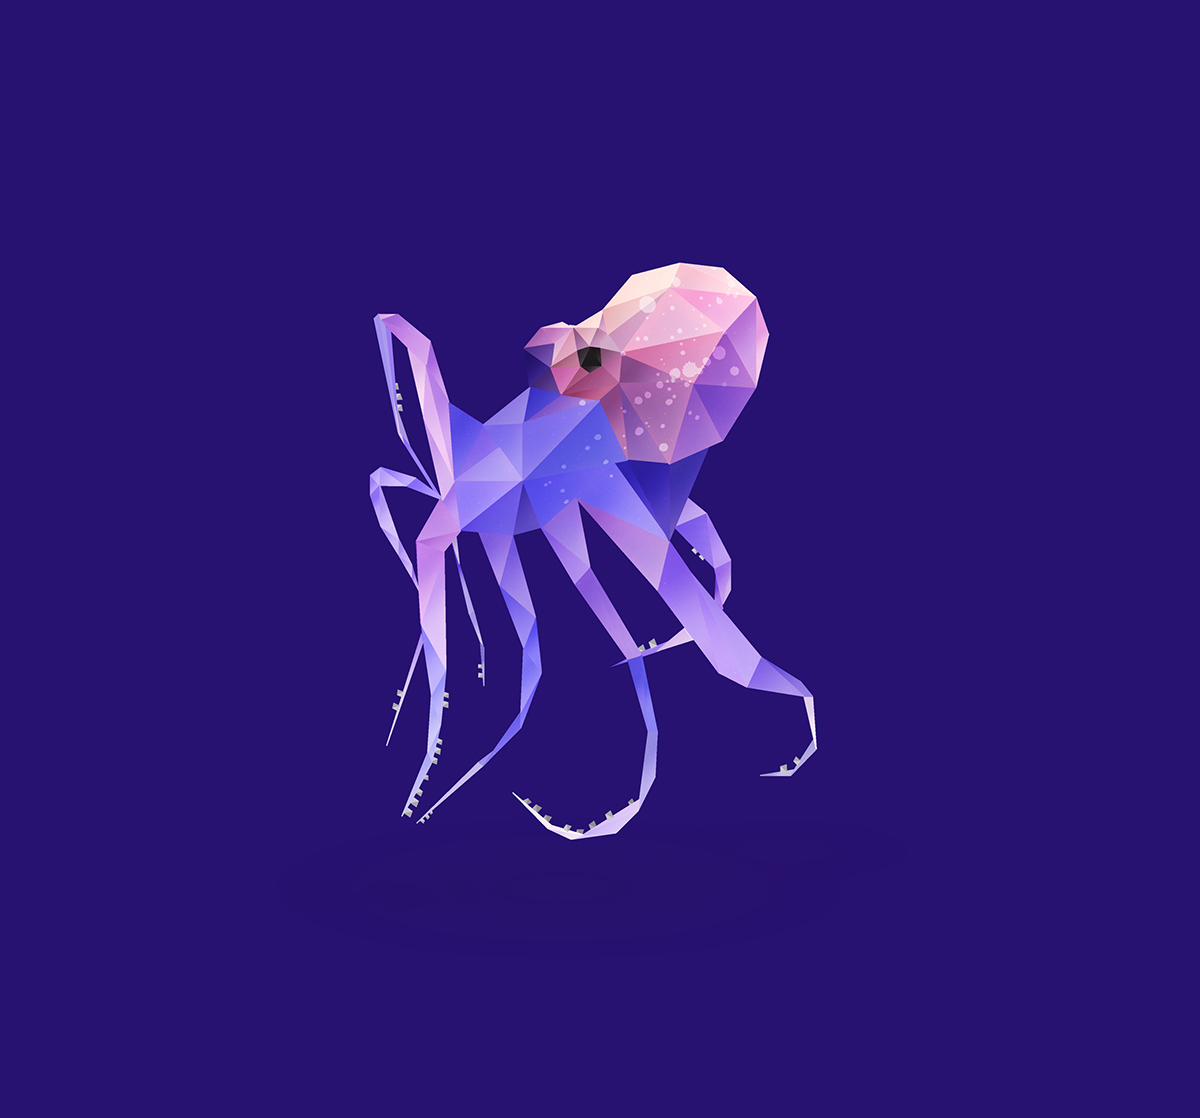 Octopus. on Behance